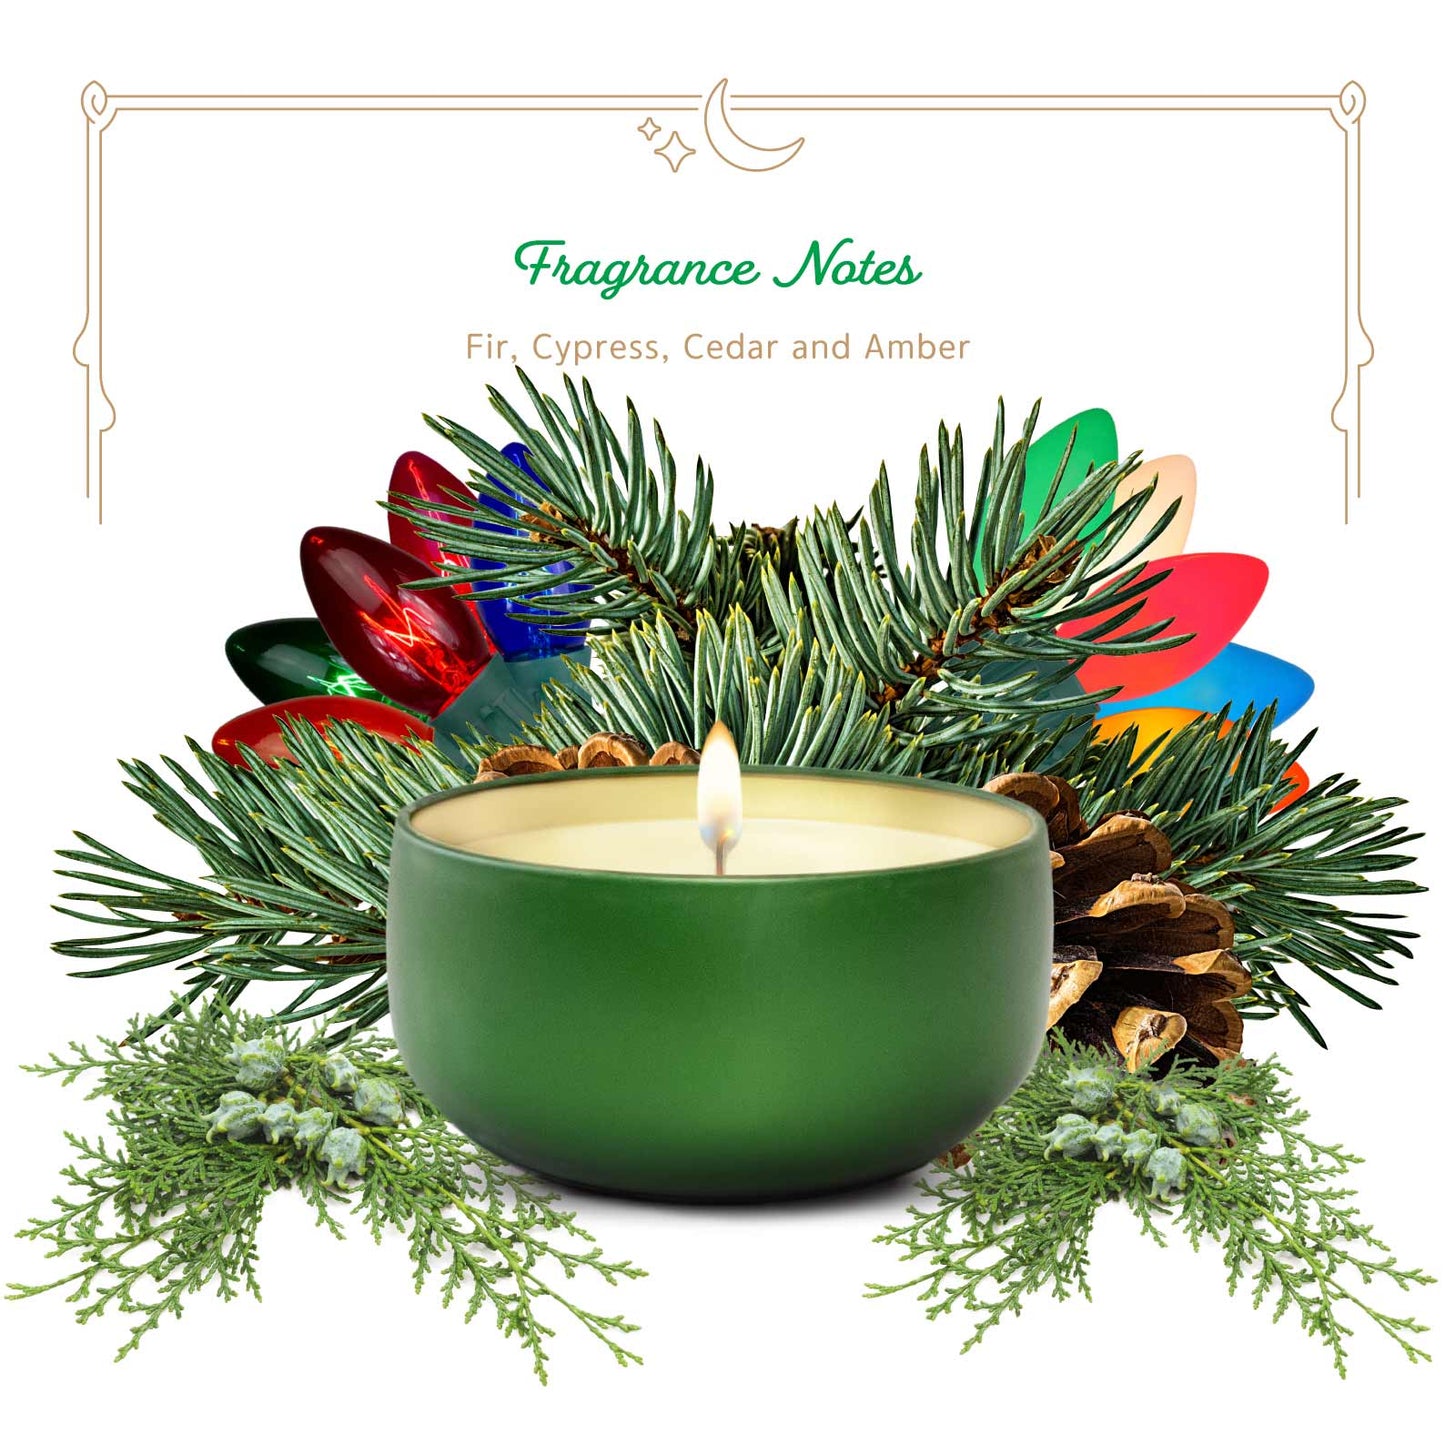 Pine Island Christmas Tree - Christmas Candle - 6.5 oz Tin